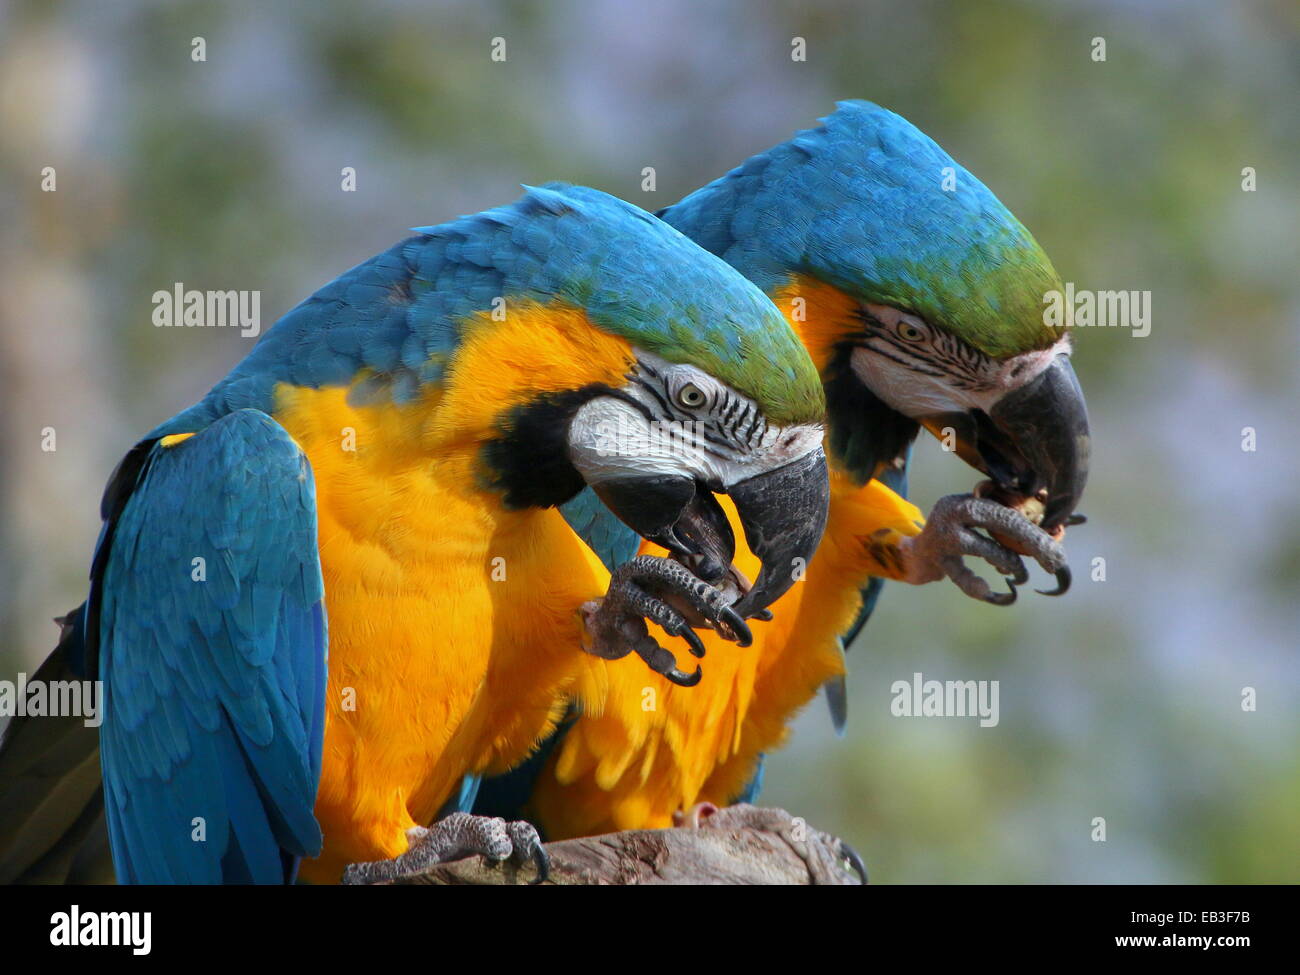 Deux bleu-et-storks (Ciconia ciconia) close-up, tout en mangeant une noix Banque D'Images